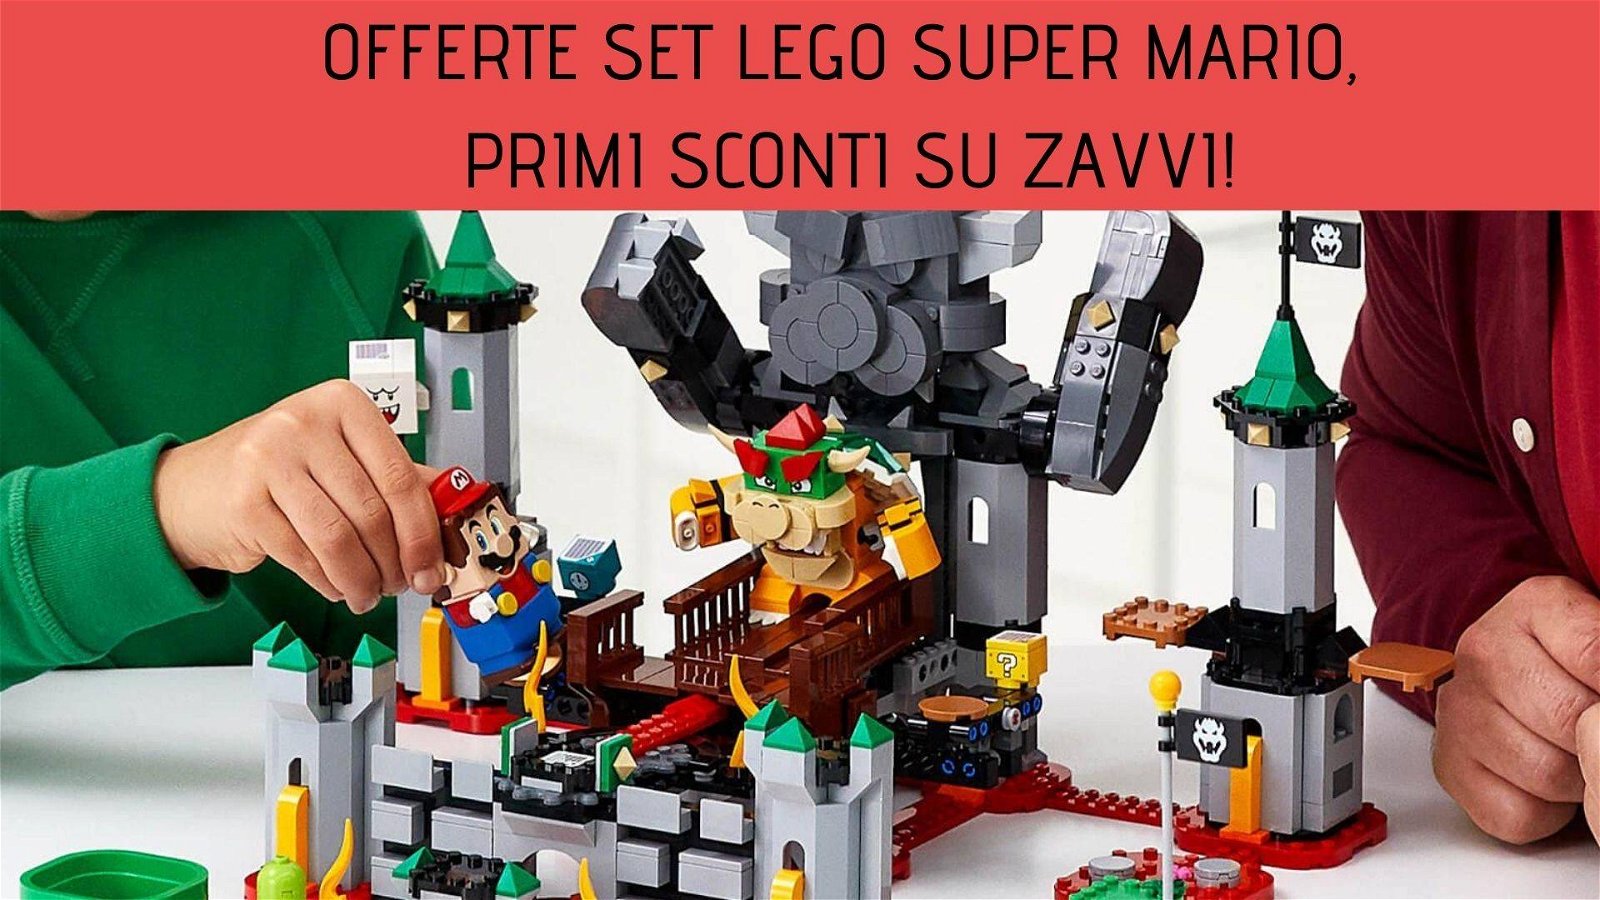 Immagine di Offerte Set LEGO Super Mario, primi sconti su Zavvi!